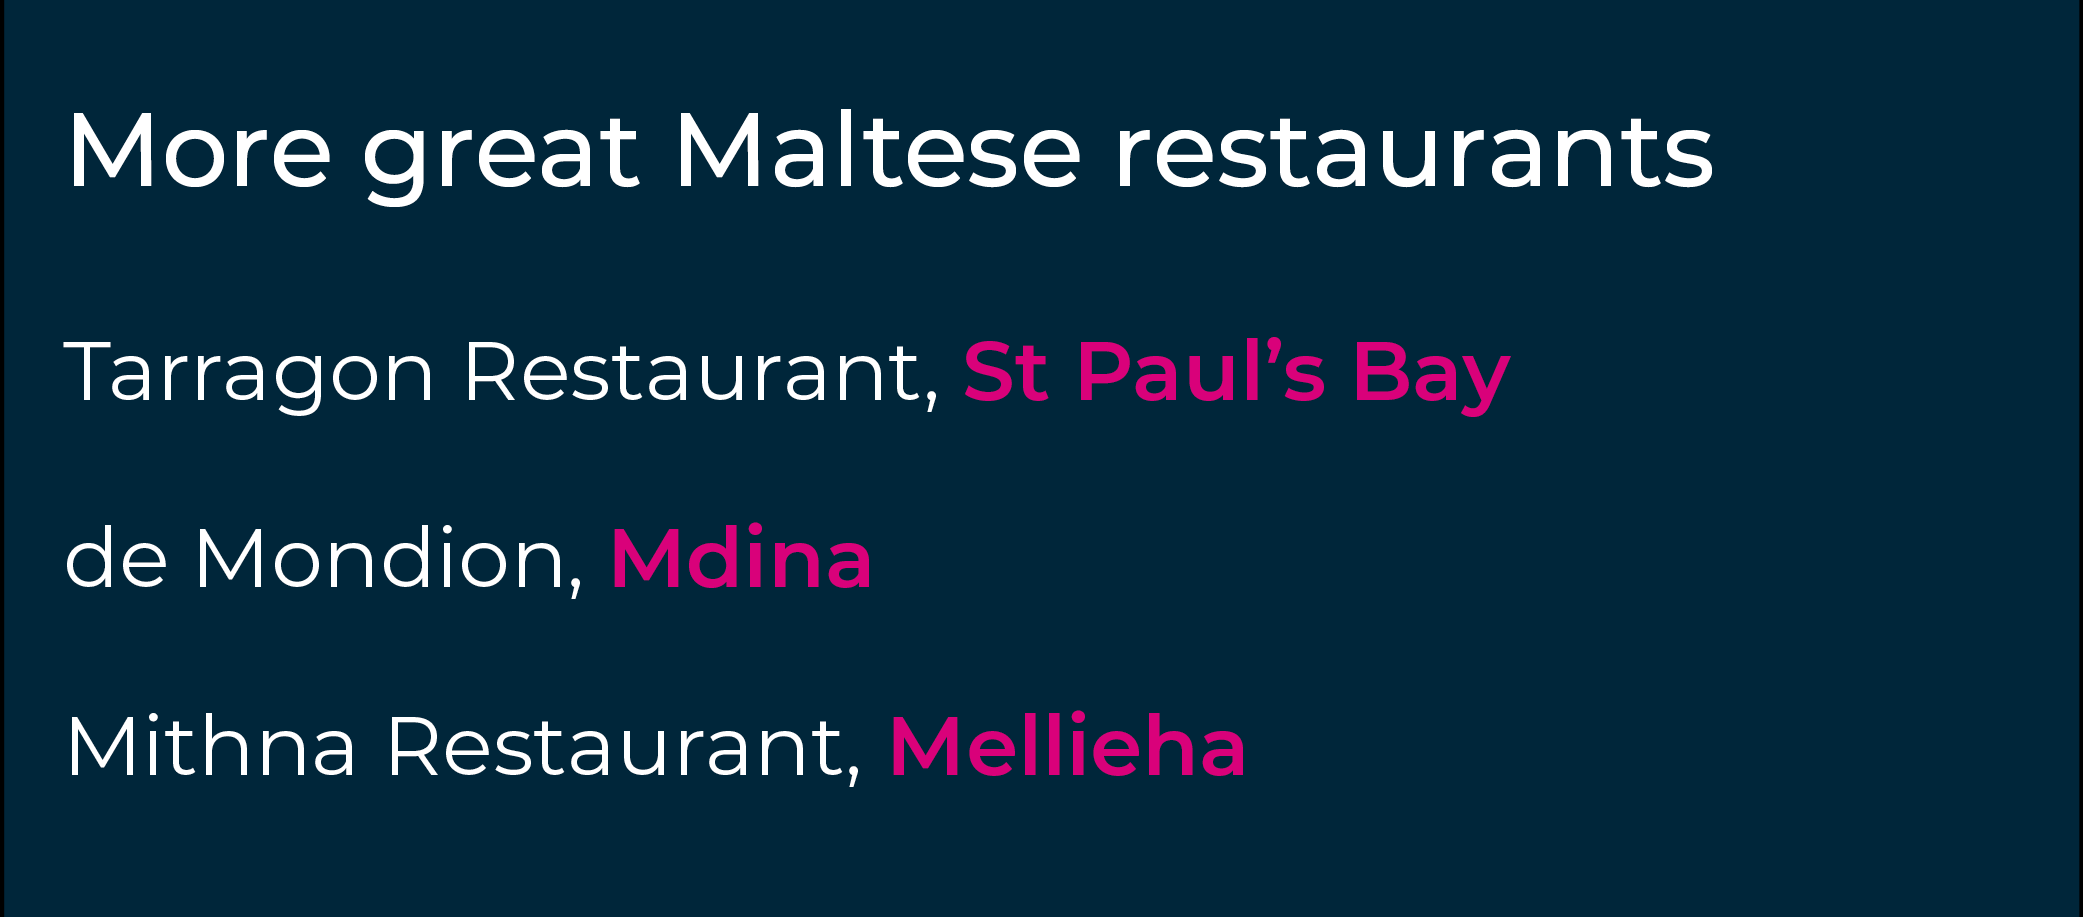 Malta'nın mutlaka denenmesi gereken restoranları için bir tat geliştirdiniz mi?